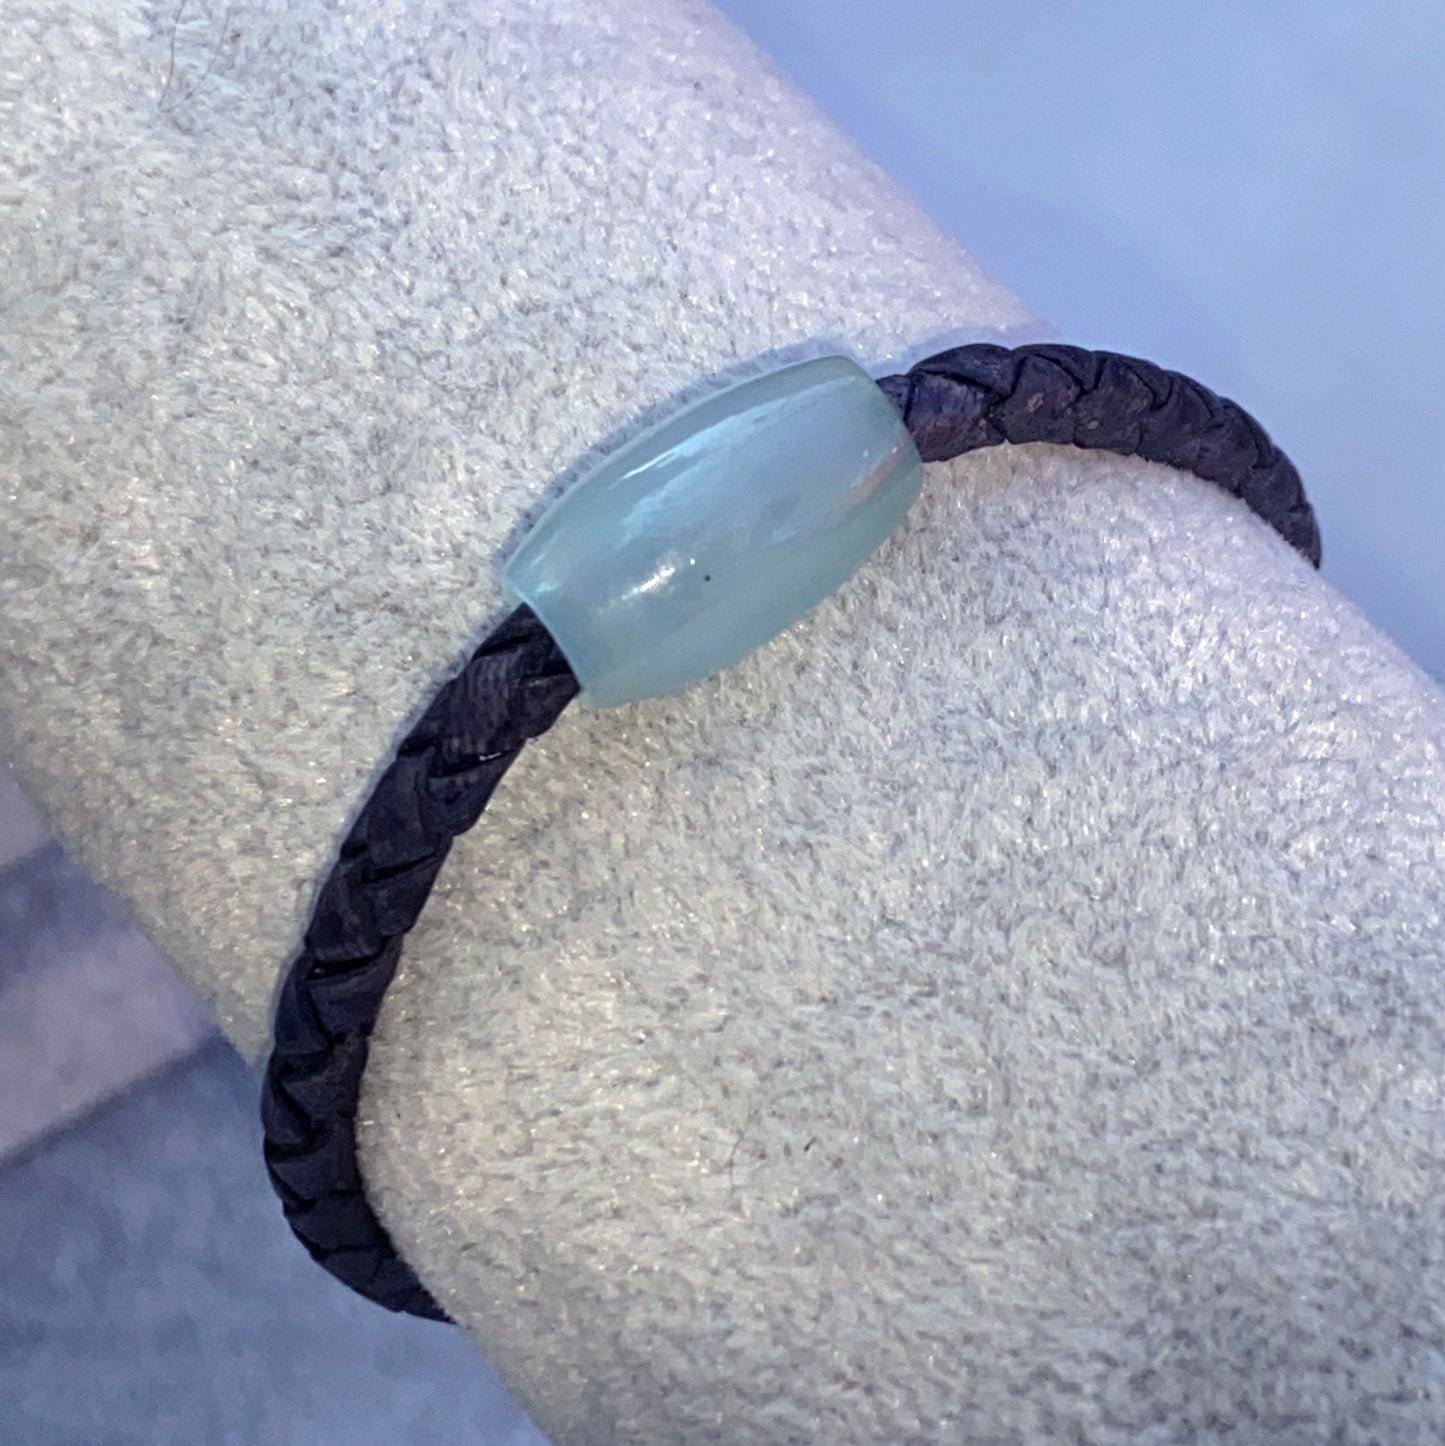 Aquamarine gemstone braided Leather Bracelet